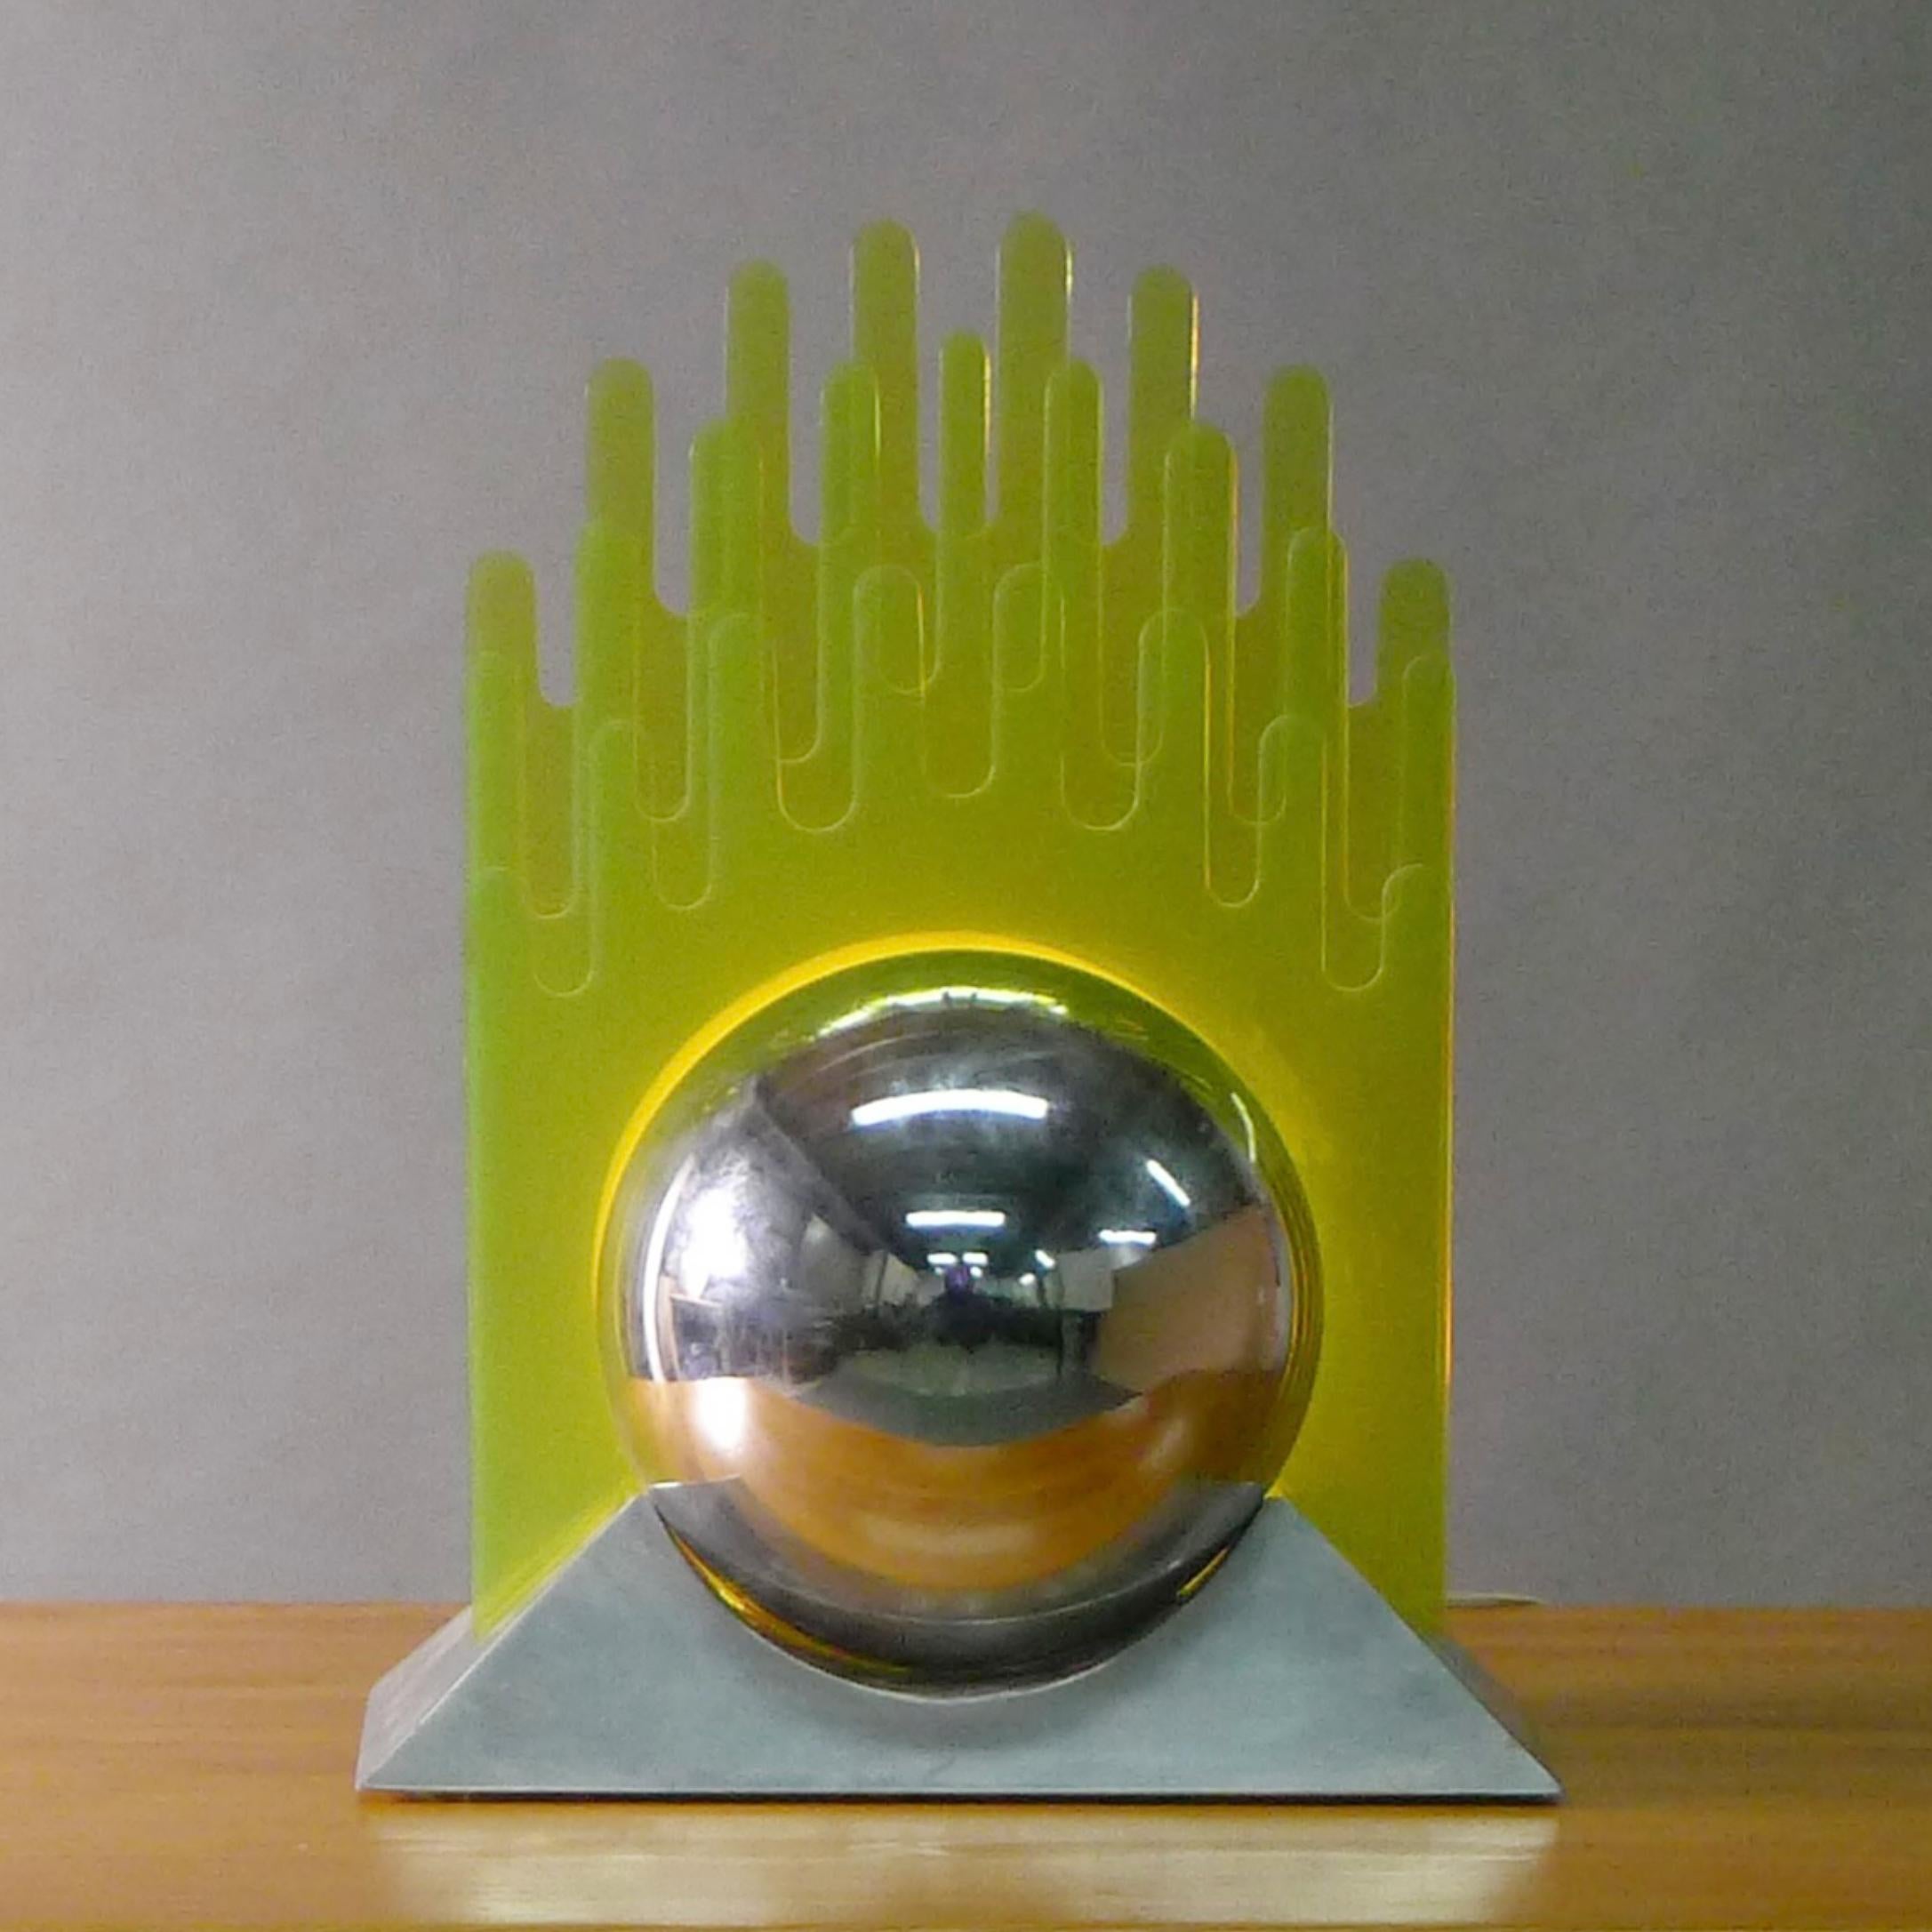 Gae Aulenti, Tischleuchte aus Plexiglas und verchromtem Metall, Italien, um 1970

Der lackierte Metallsockel trägt eine verchromte Kugel, in die vier gelbe Plexiglasscheiben mit Zinnen eingesetzt sind.  Wenn sie angezündet wird, steigt das Licht von